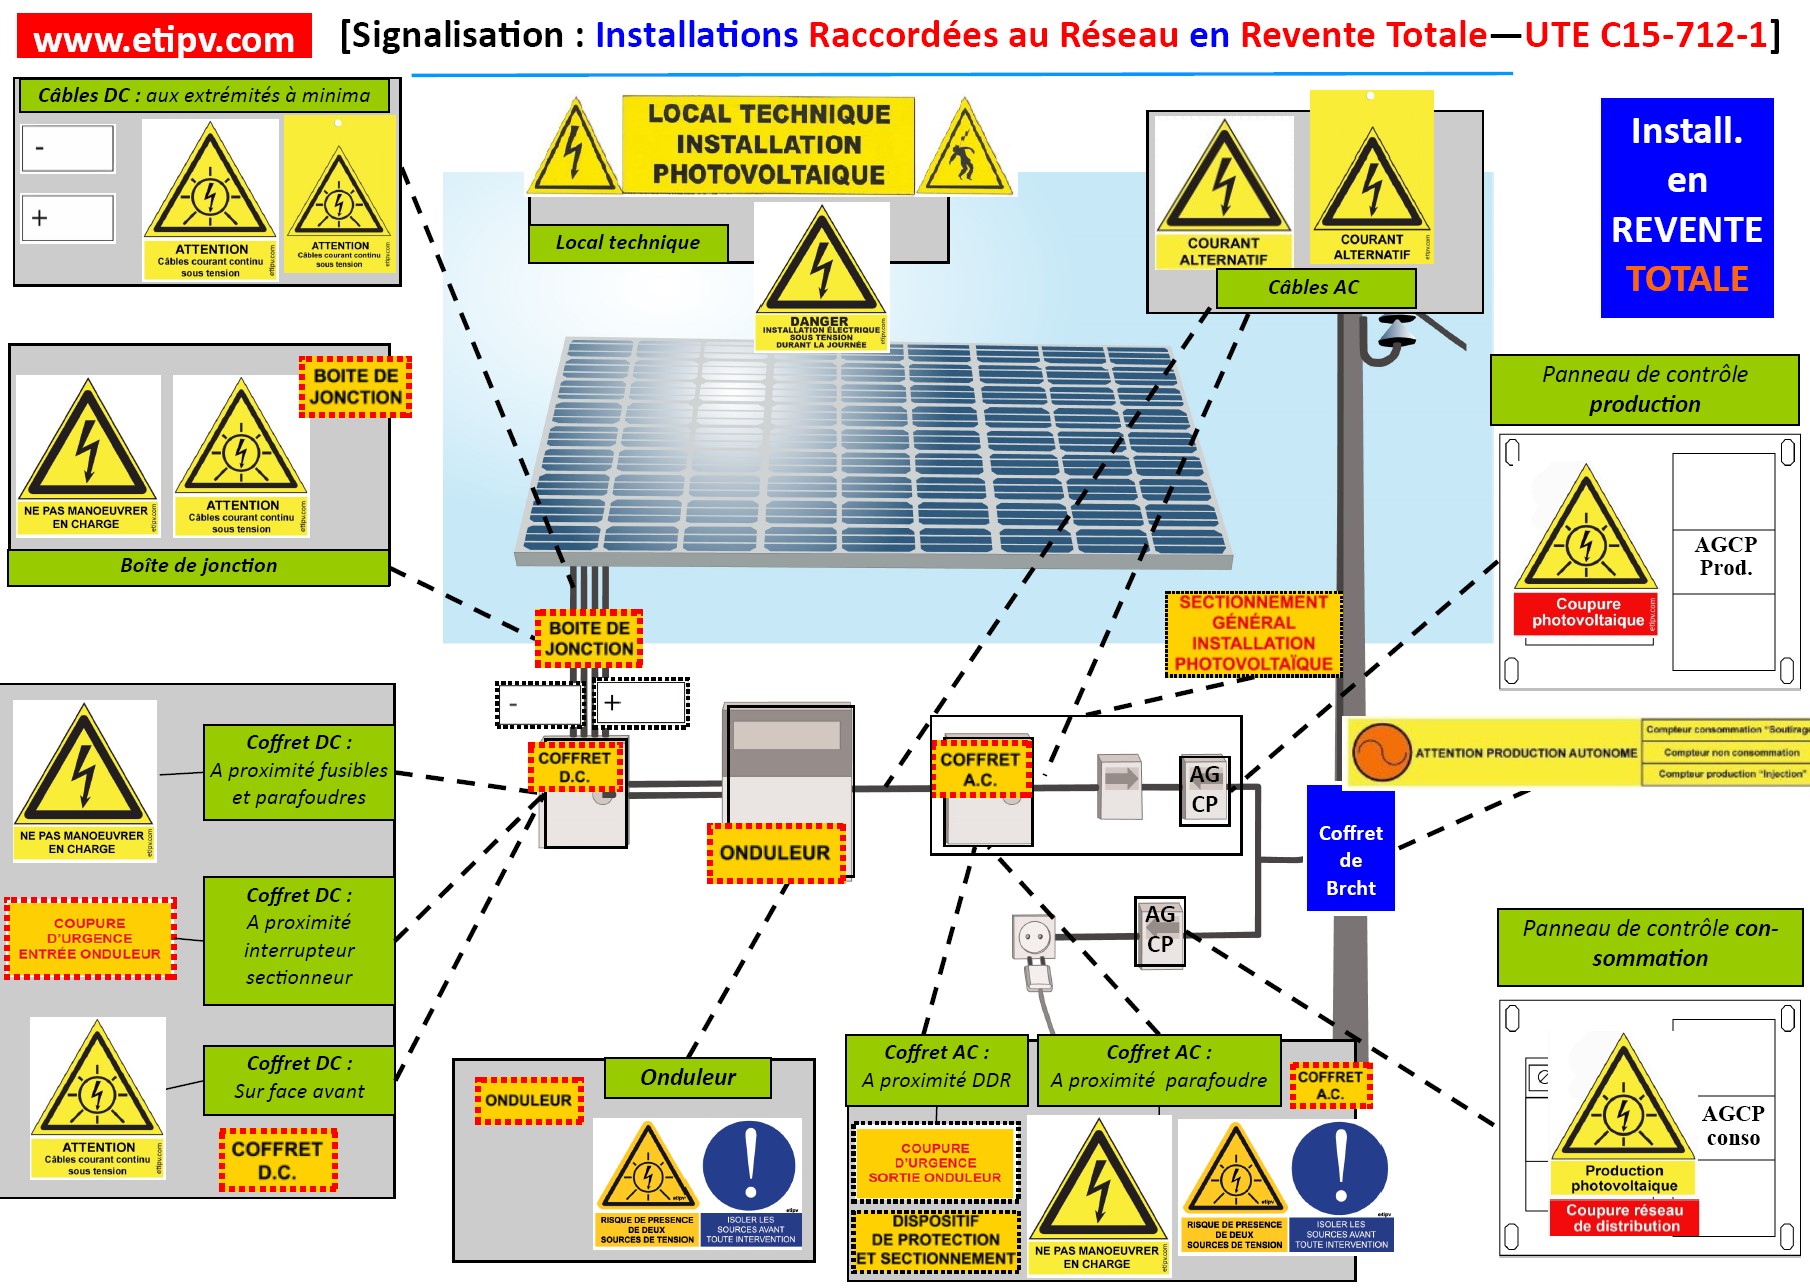 Etiquettes Photovoltaïques Kit de 65 adhésifs photovoltaïques